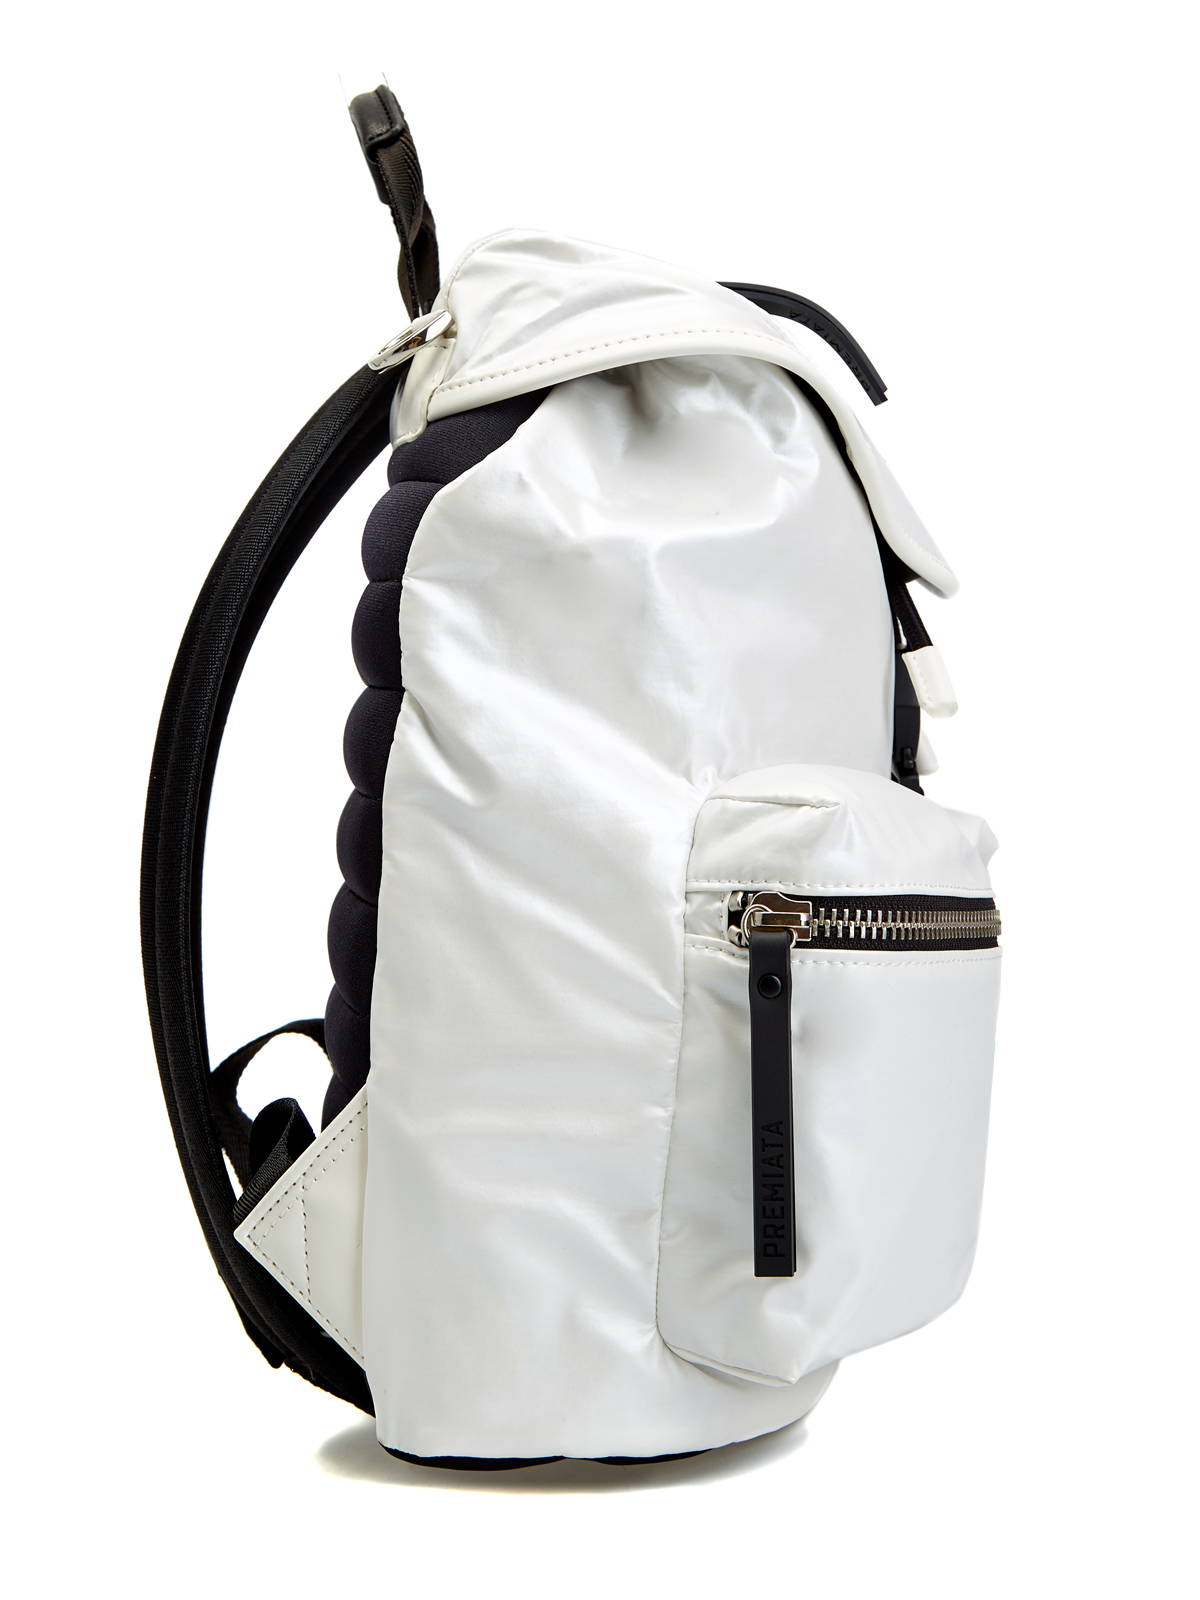 Функциональный рюкзак Lyn с кожаной отделкой и съемным ремнем PREMIATA, цвет белый, размер S;M - фото 4